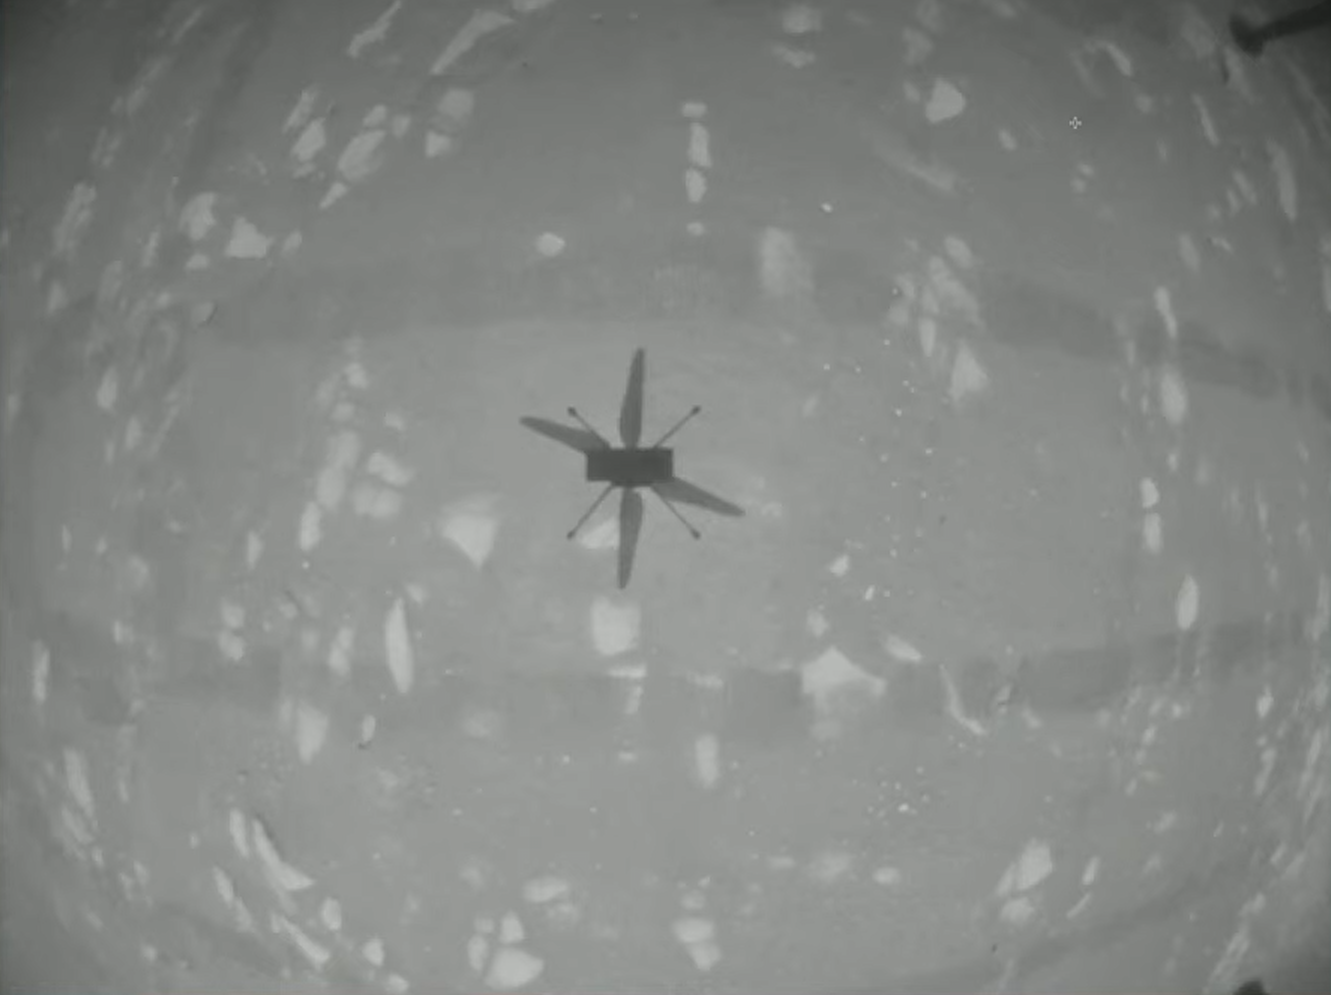 Az Ingenuity helikopter lefele tekintő kamerájának felvétele az első repülés egy pillanatát örökíti meg.